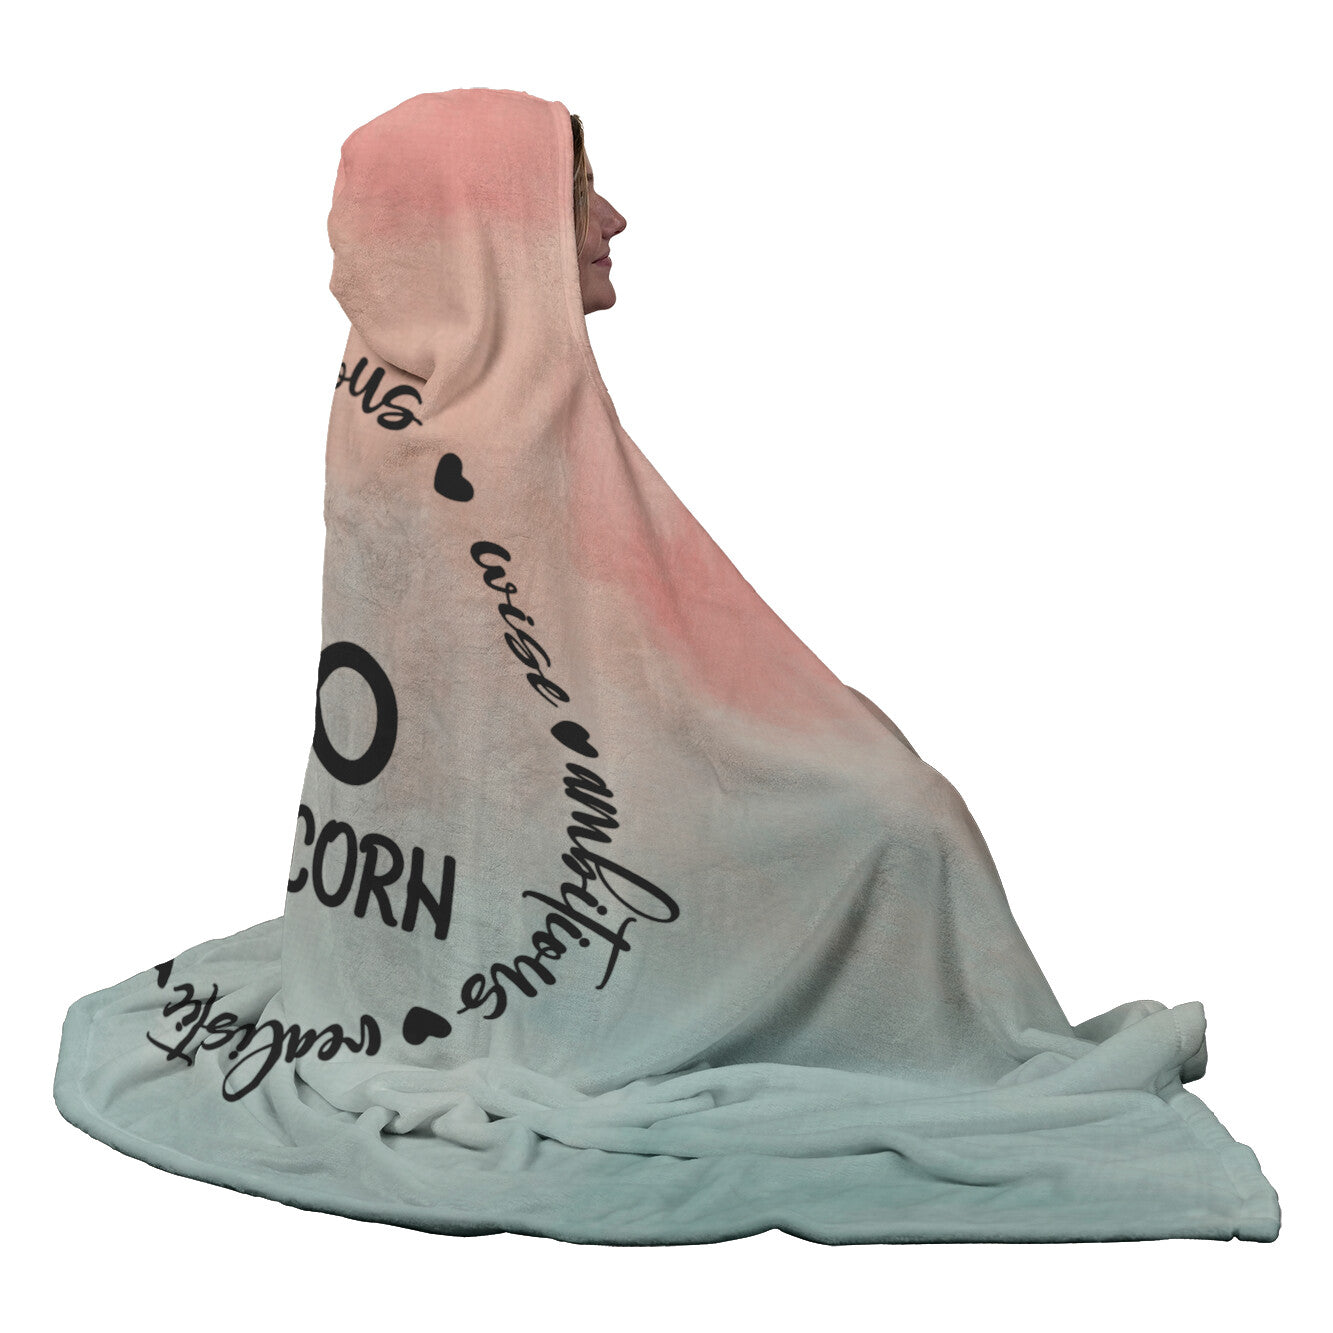 Capricorn Hooded Blanket